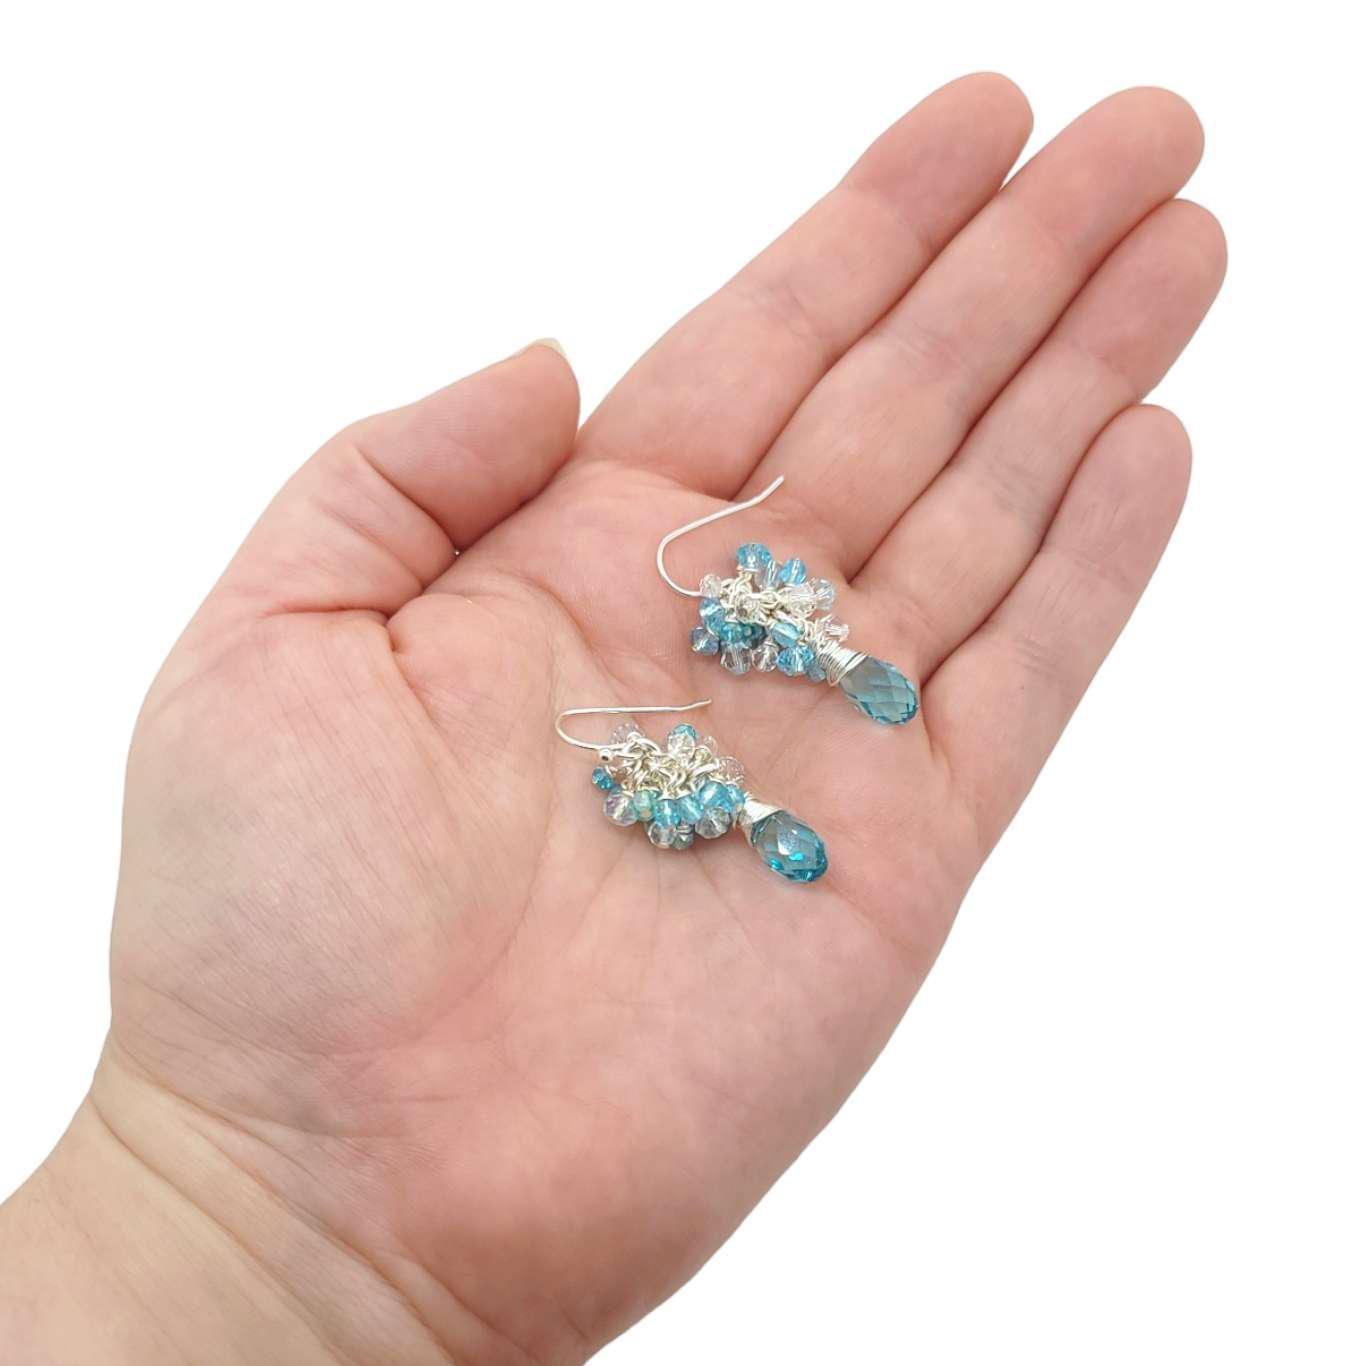 Earrings - Aquamarine Crystal Teardrop Clusters by Sugar Sidewalk